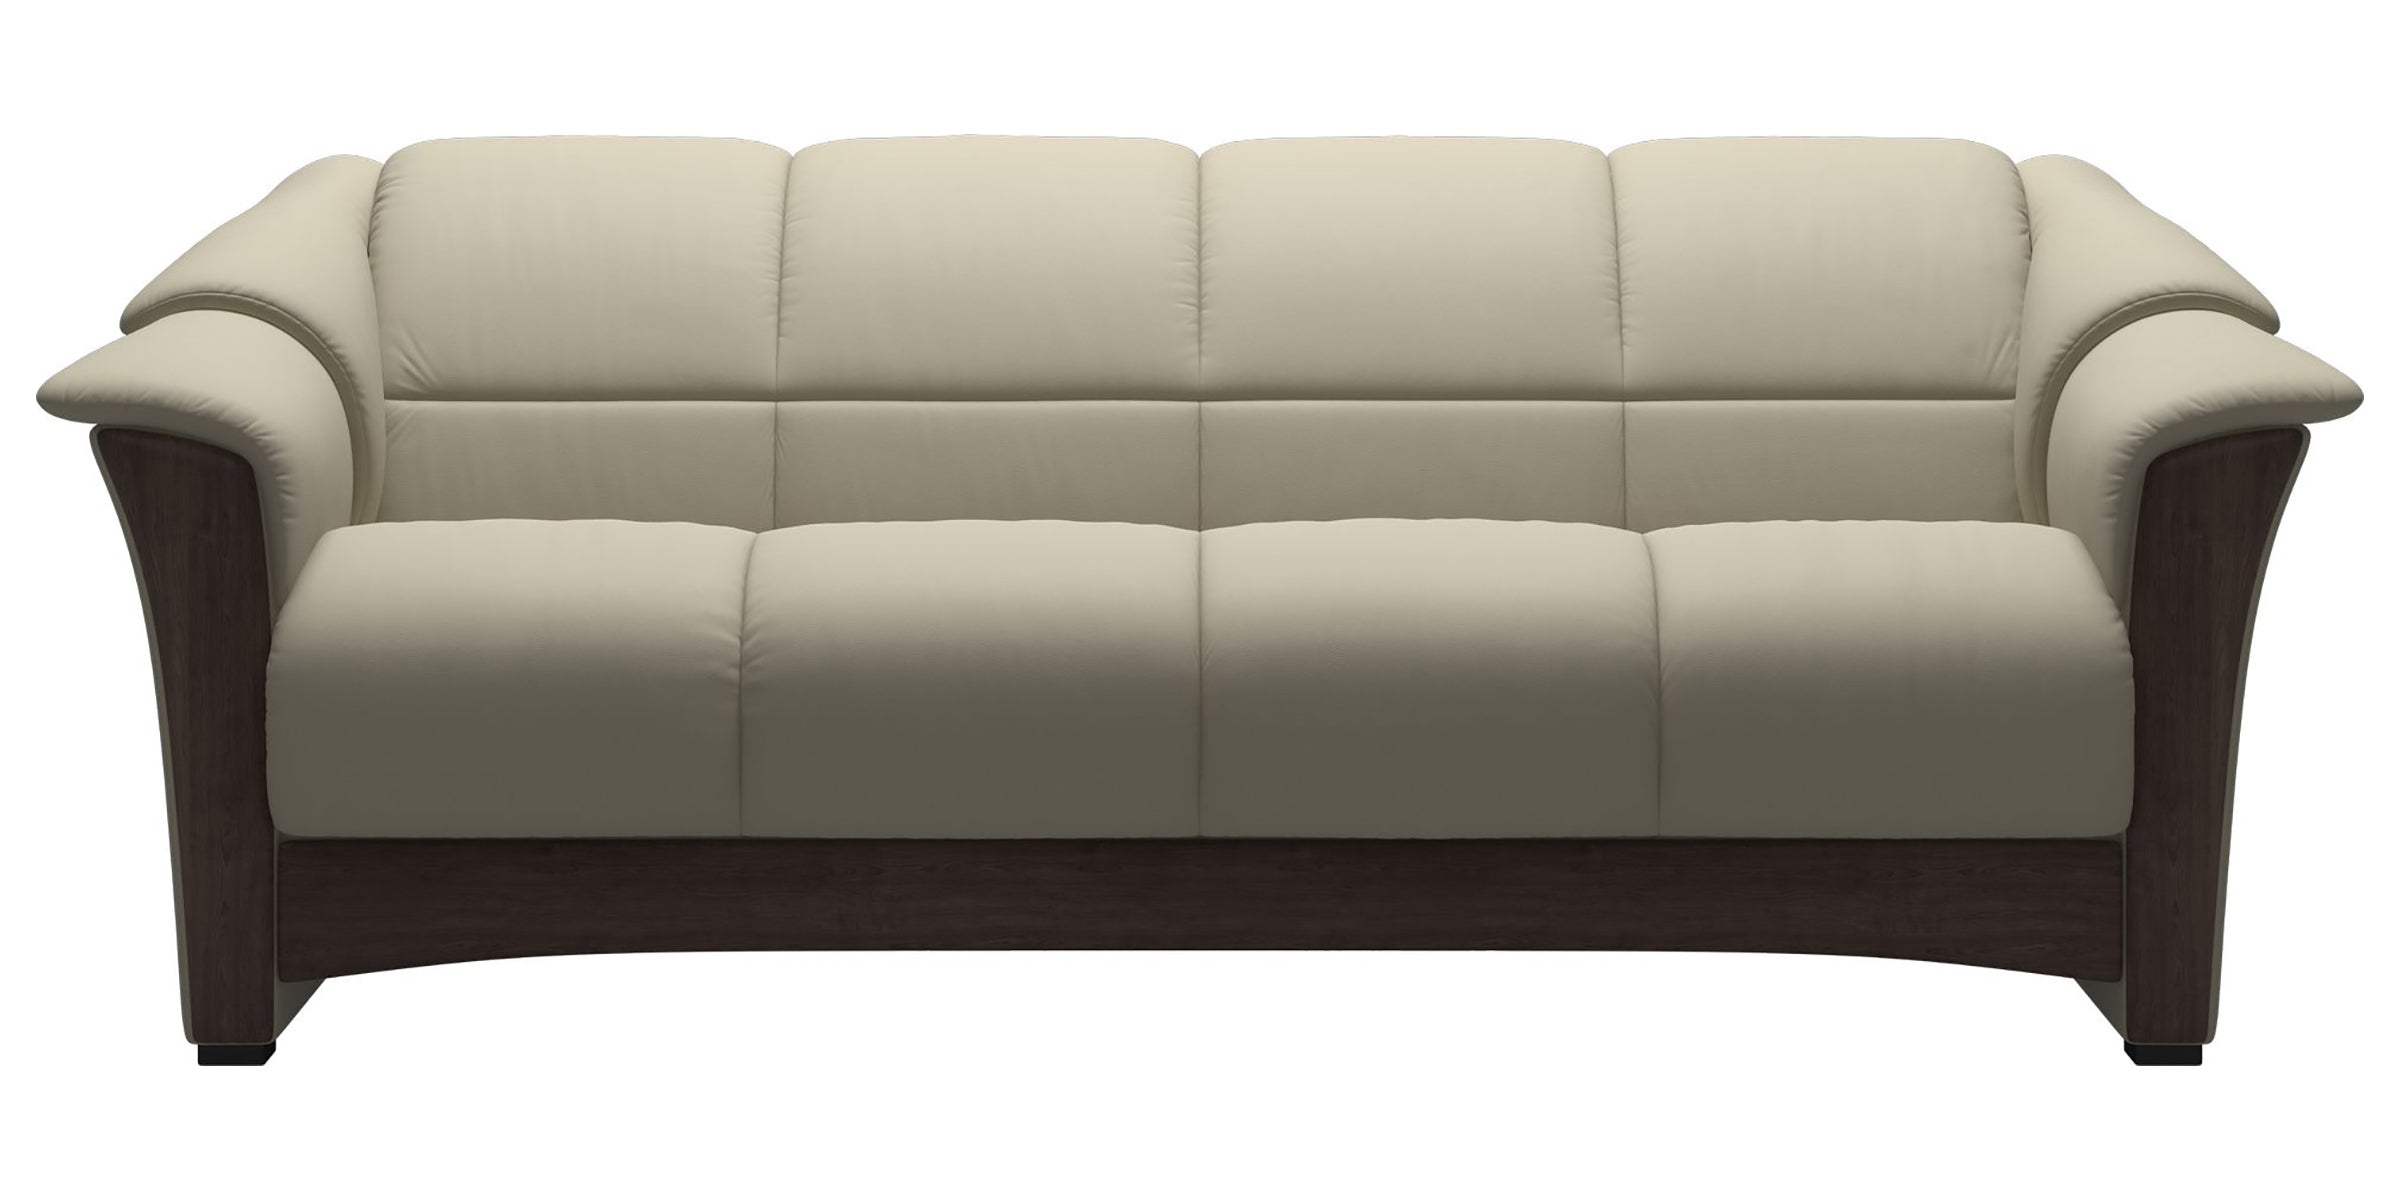 Paloma Leather Light Grey and Wenge Base | Stressless Oslo Sofa | Valley Ridge Furniture